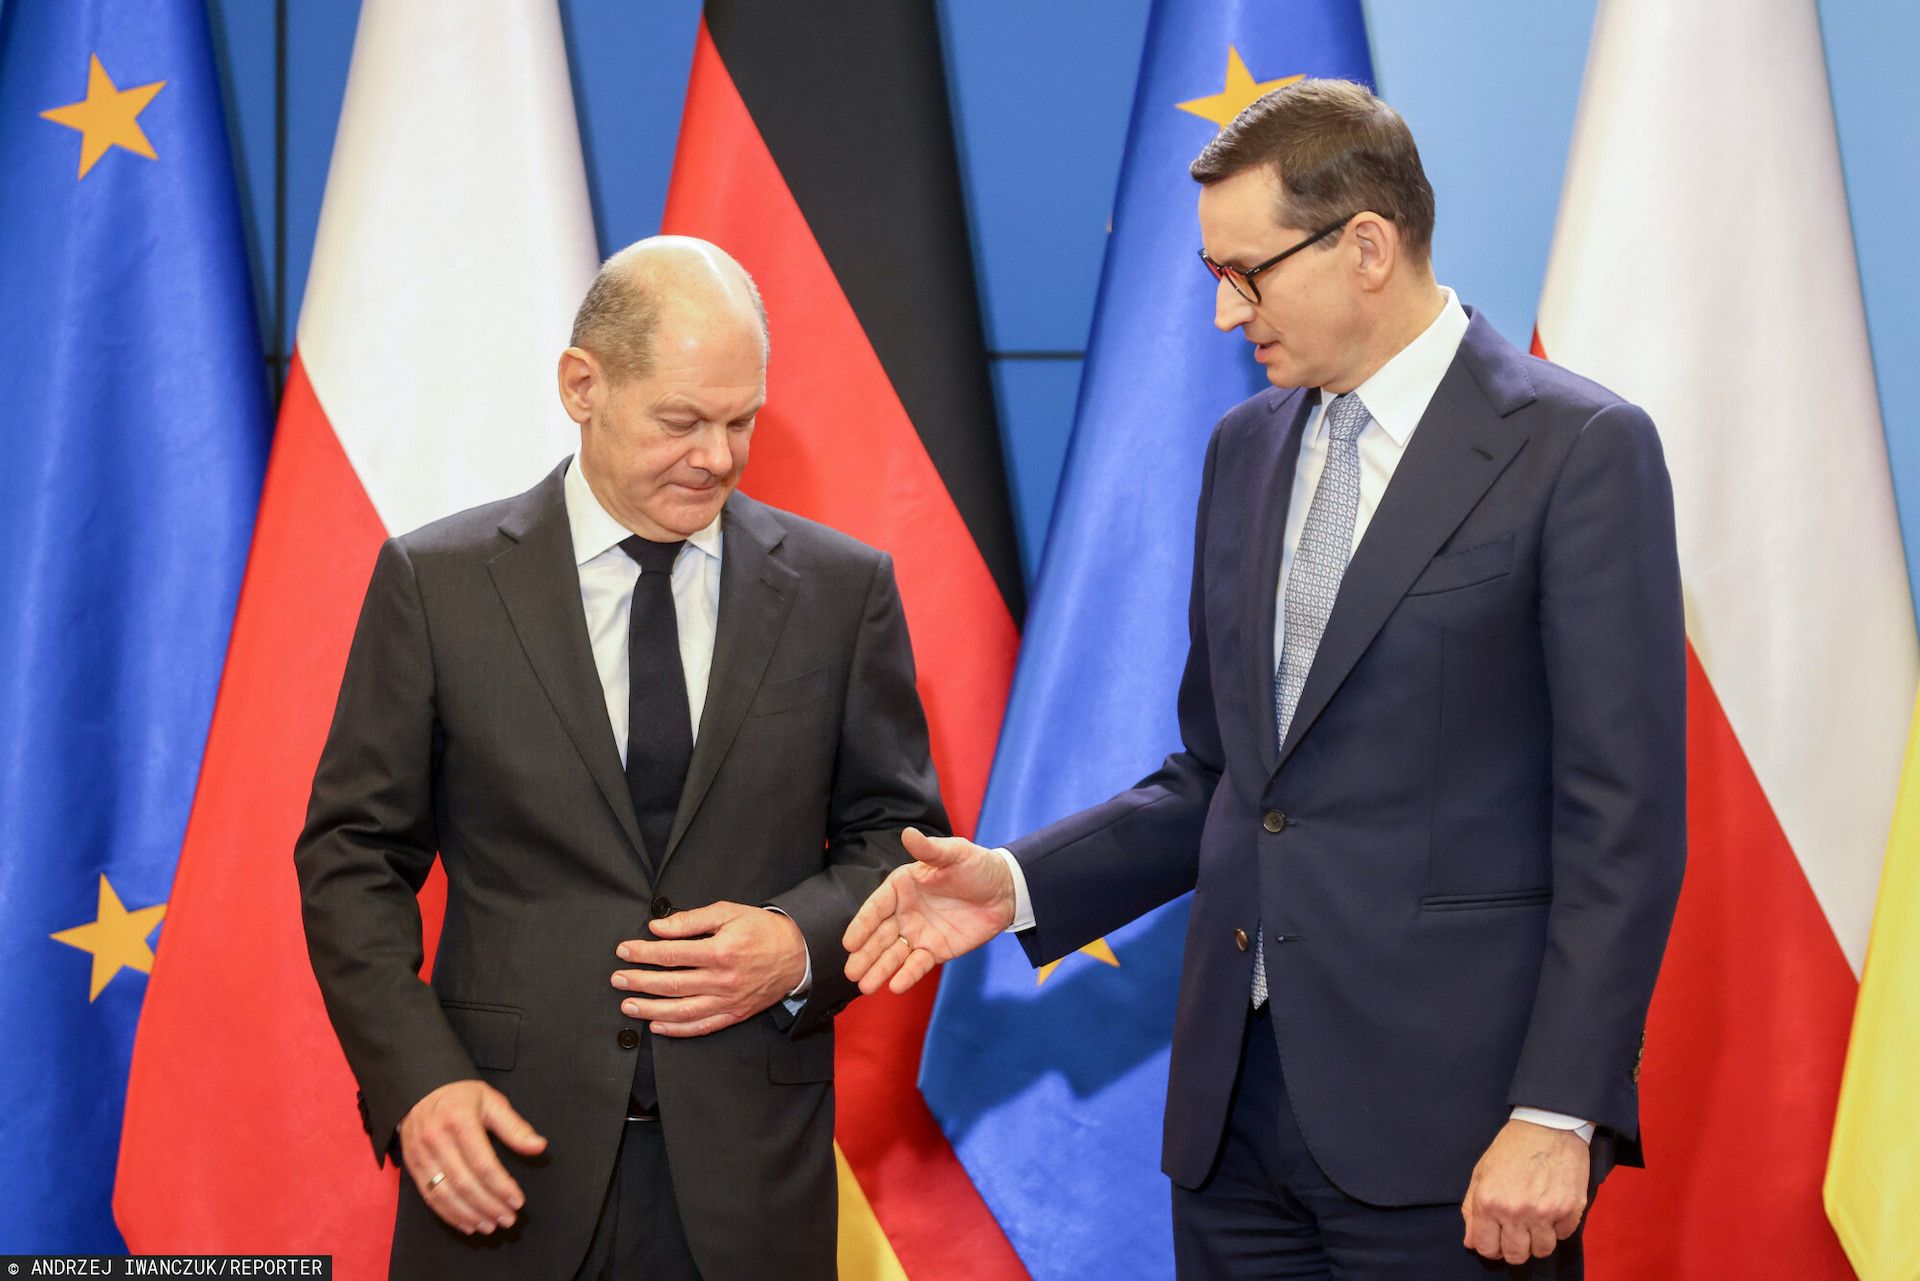 Kanclerz Niemiec nie zgadza się na propozycję polskiego rządu ws. odejścia od rosyjskiego węgla